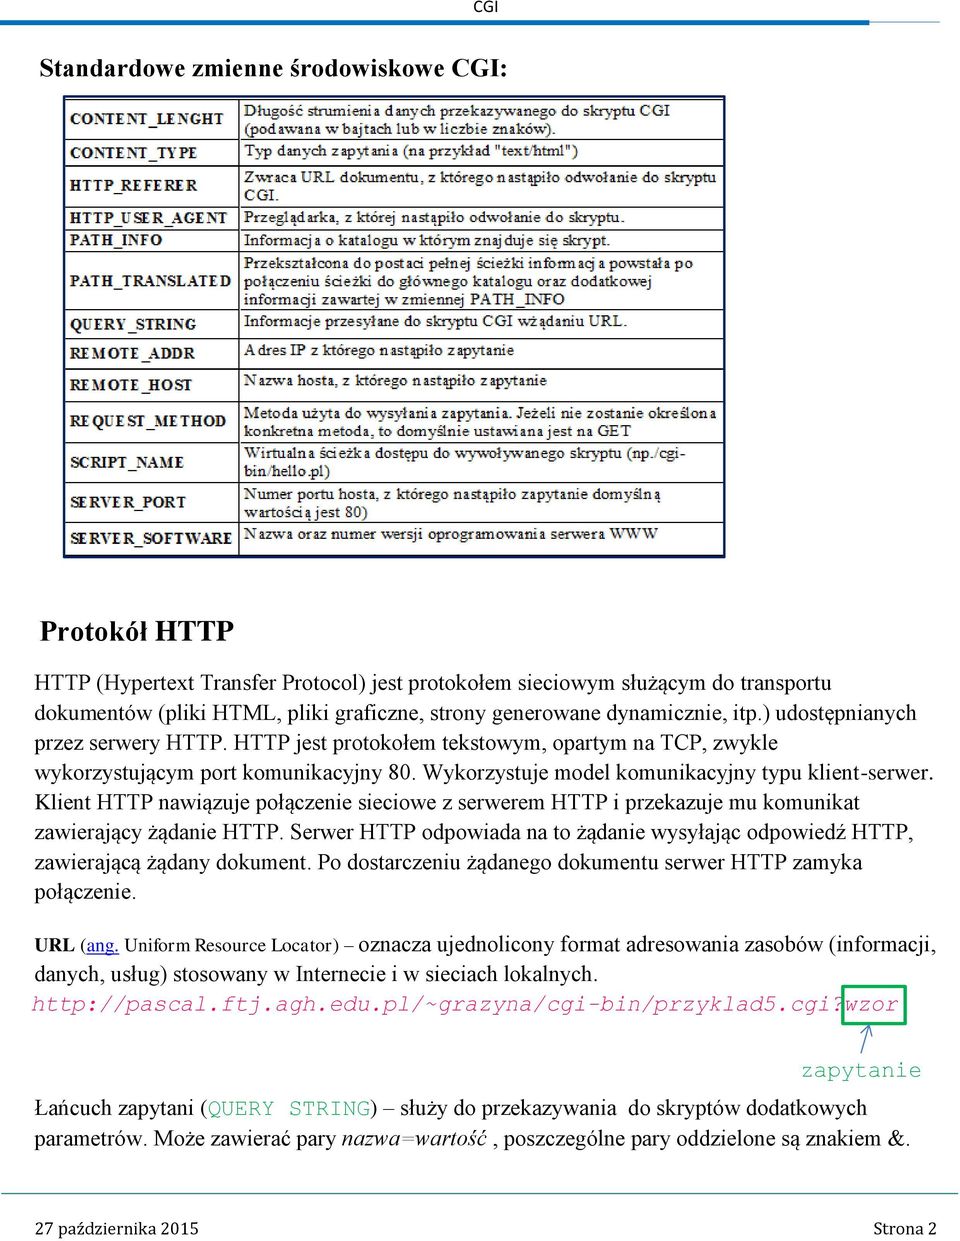 Klient HTTP nawiązuje połączenie sieciowe z serwerem HTTP i przekazuje mu komunikat zawierający żądanie HTTP. Serwer HTTP odpowiada na to żądanie wysyłając odpowiedź HTTP, zawierającą żądany dokument.